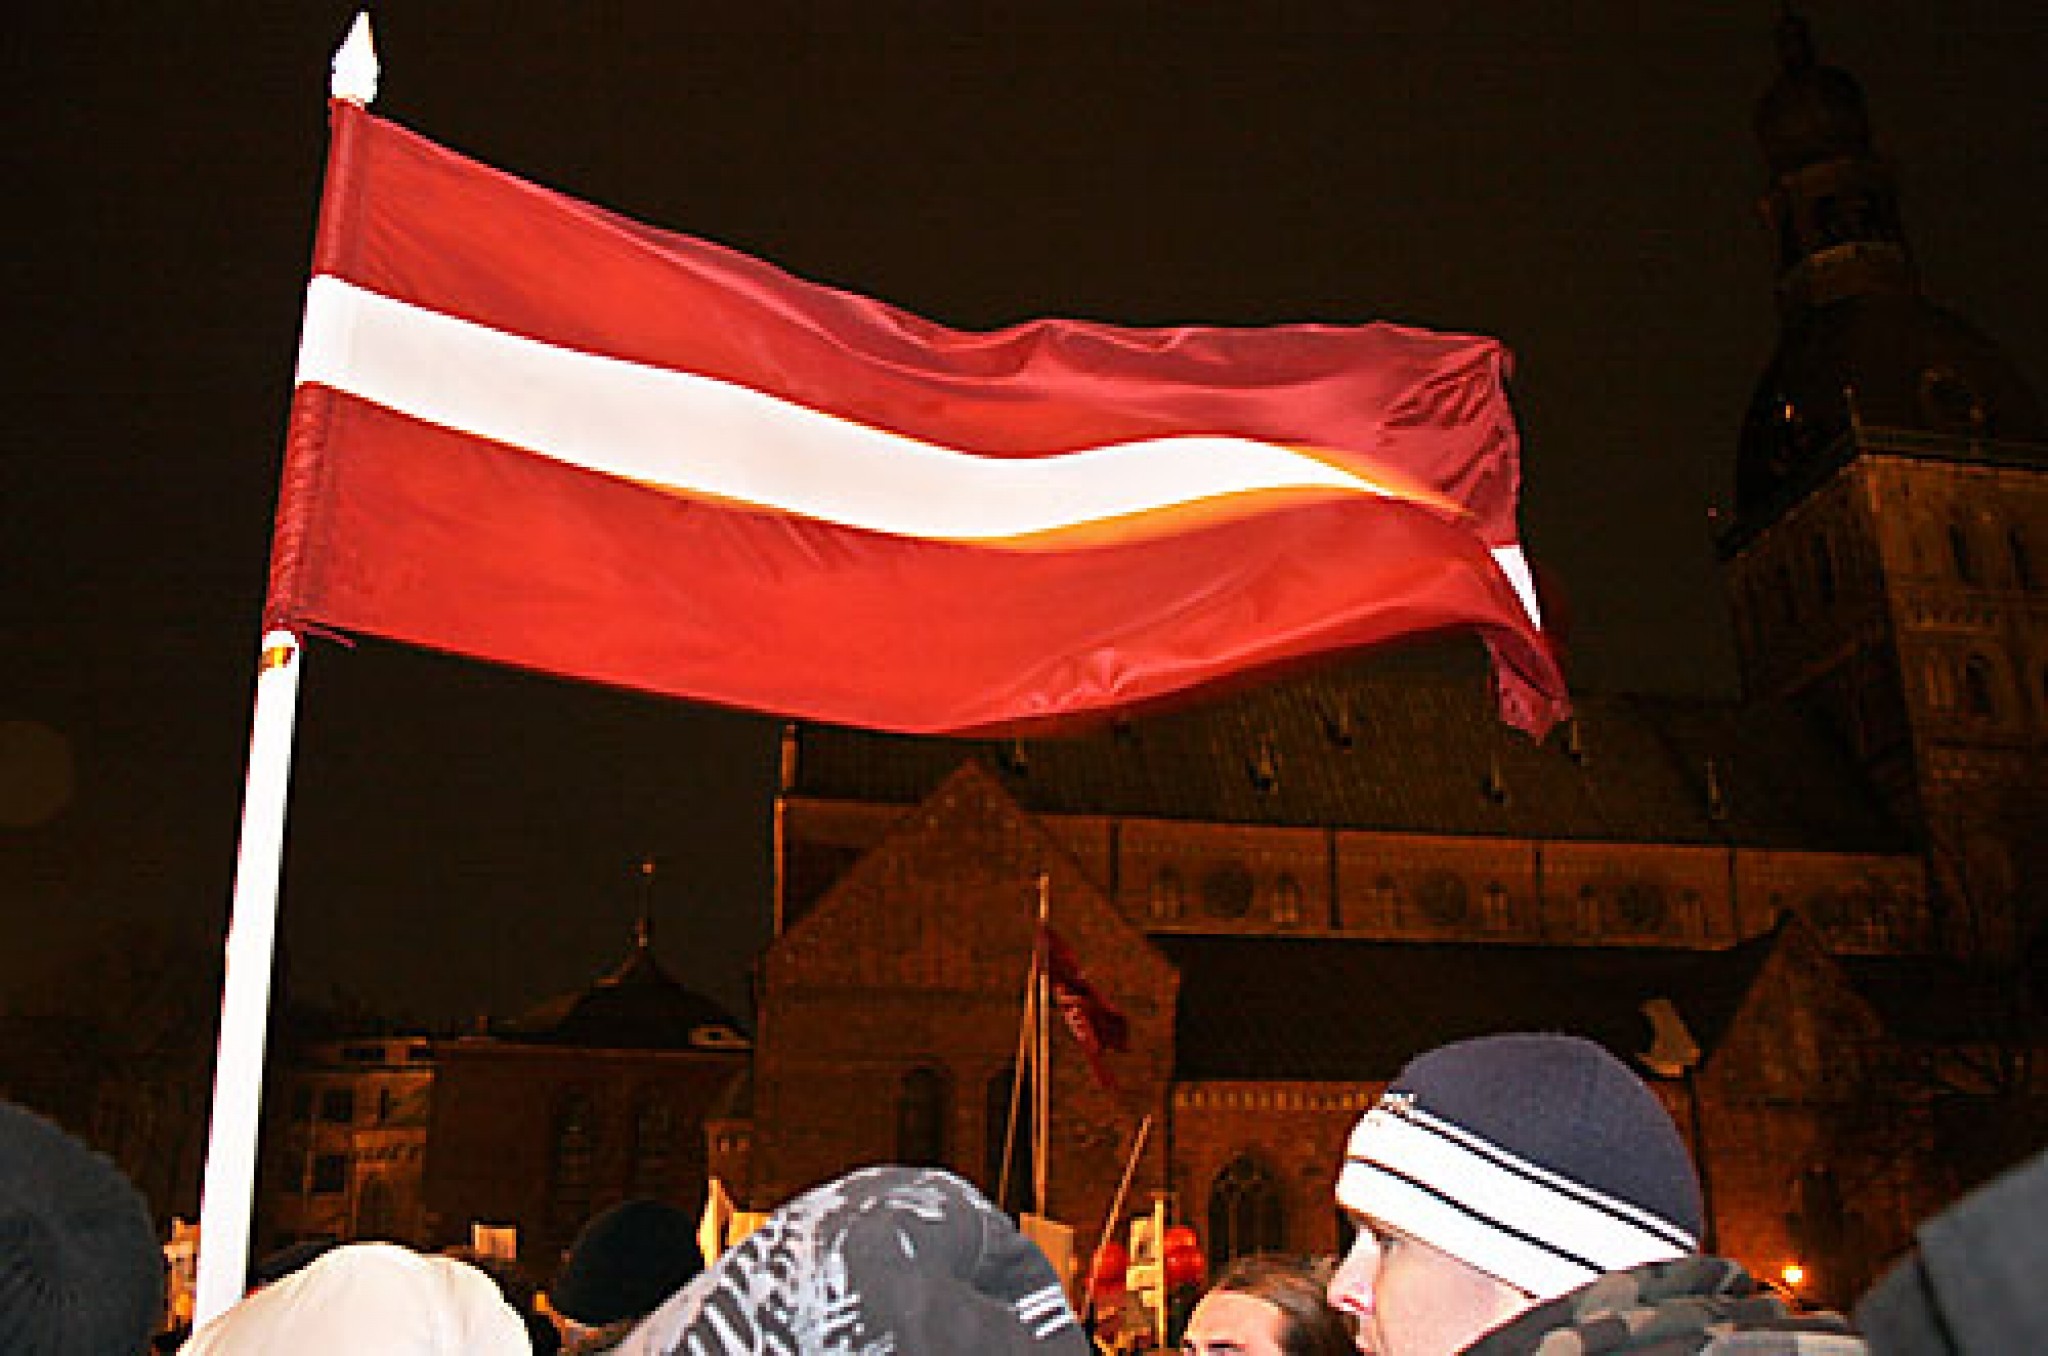 Pasaules mediji ziņo par protesta akciju un nekārtībām Rīgā